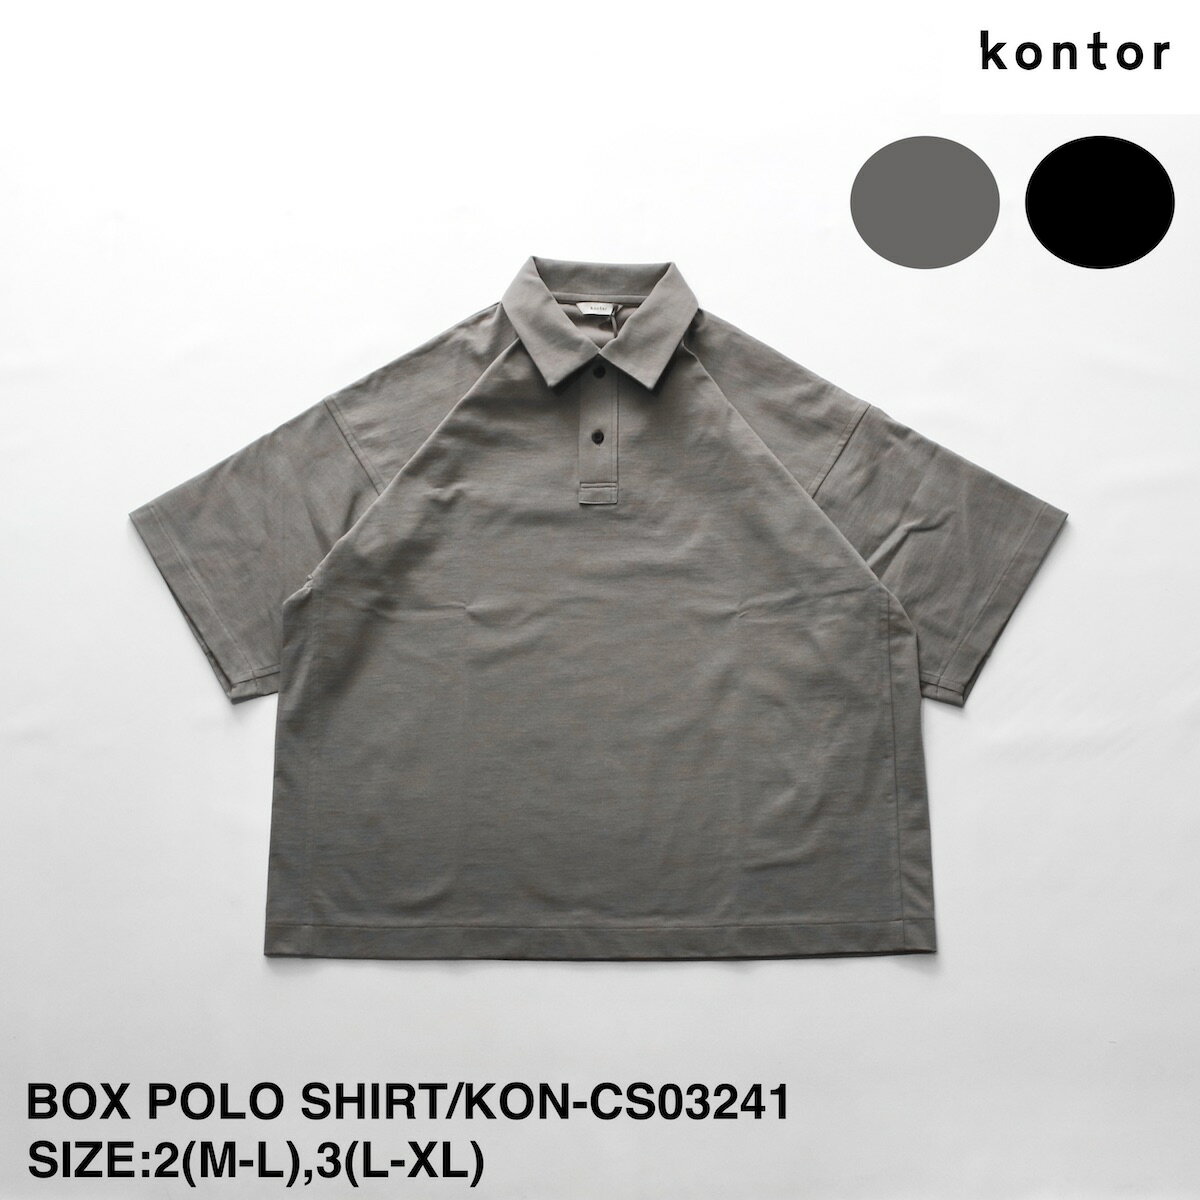 コントール BOX POLO SHIRT | メンズ ポロシャツ メンズポロシャツ ショートスリーブ ショートスリーブポロシャツ 半袖 半袖ポロシャツ ボックス ボックスポロシャツ カジュアル シンプル ブランド 日本製